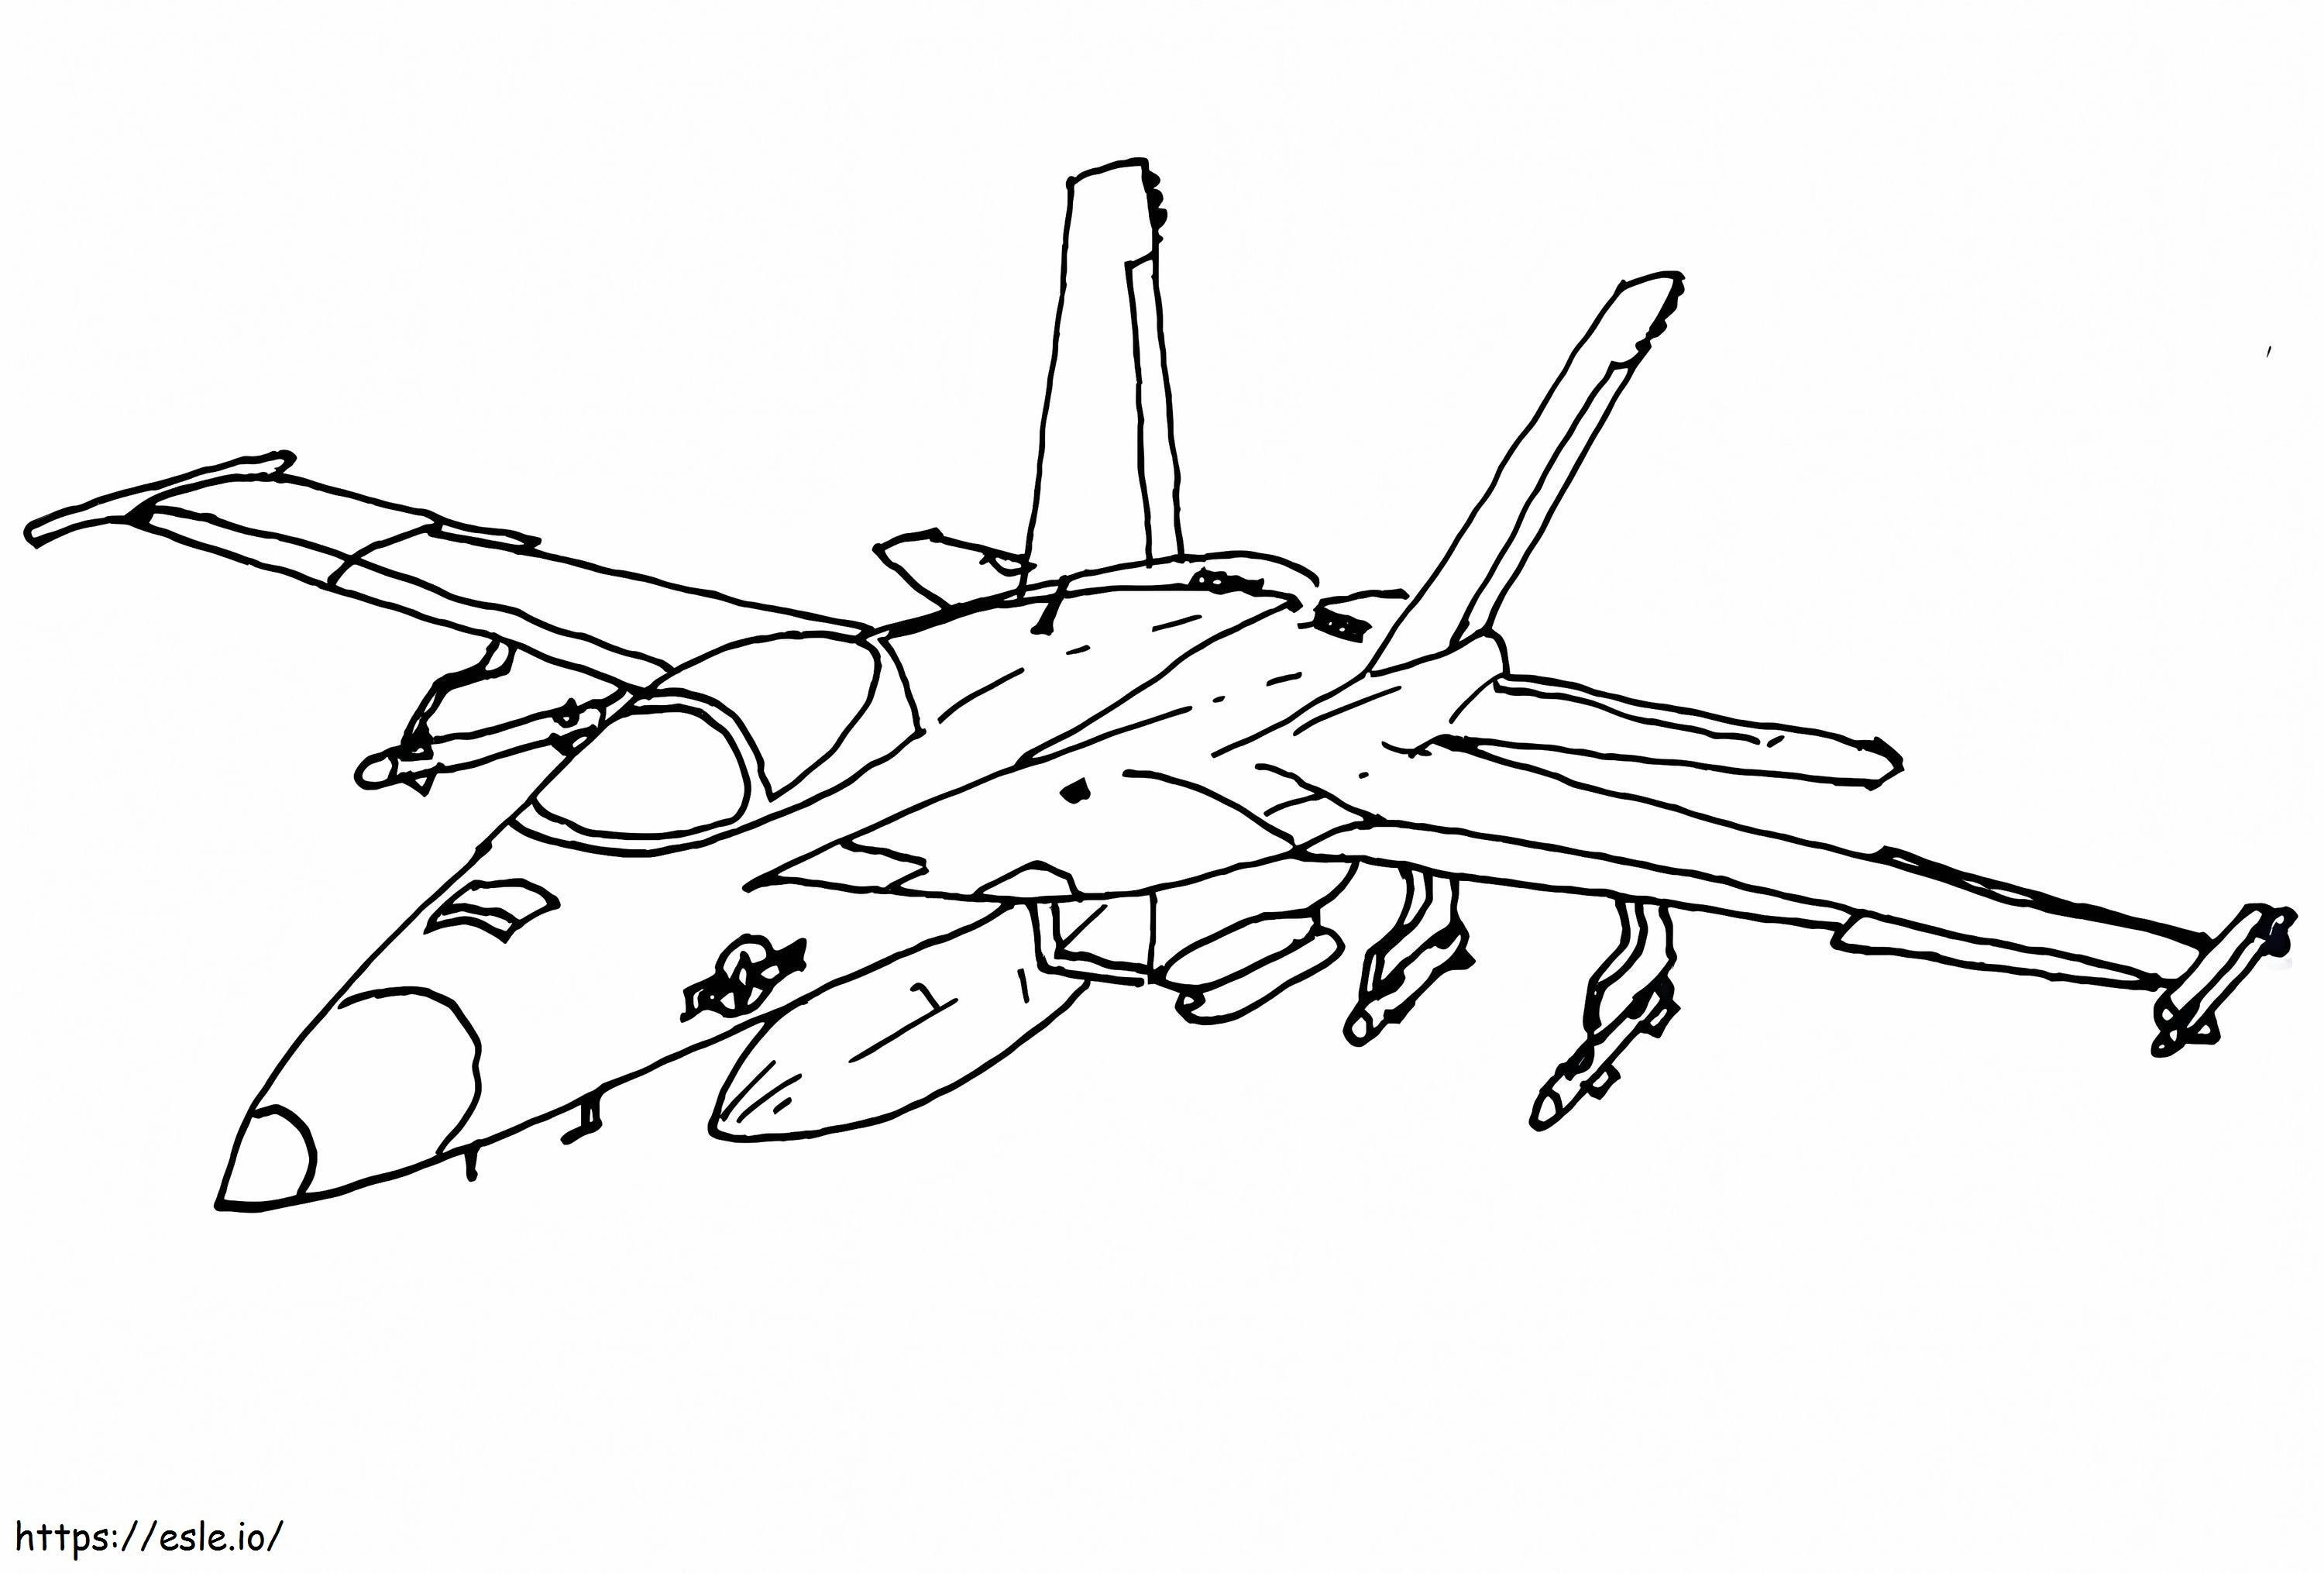 Cooler Kampfjet ausmalbilder